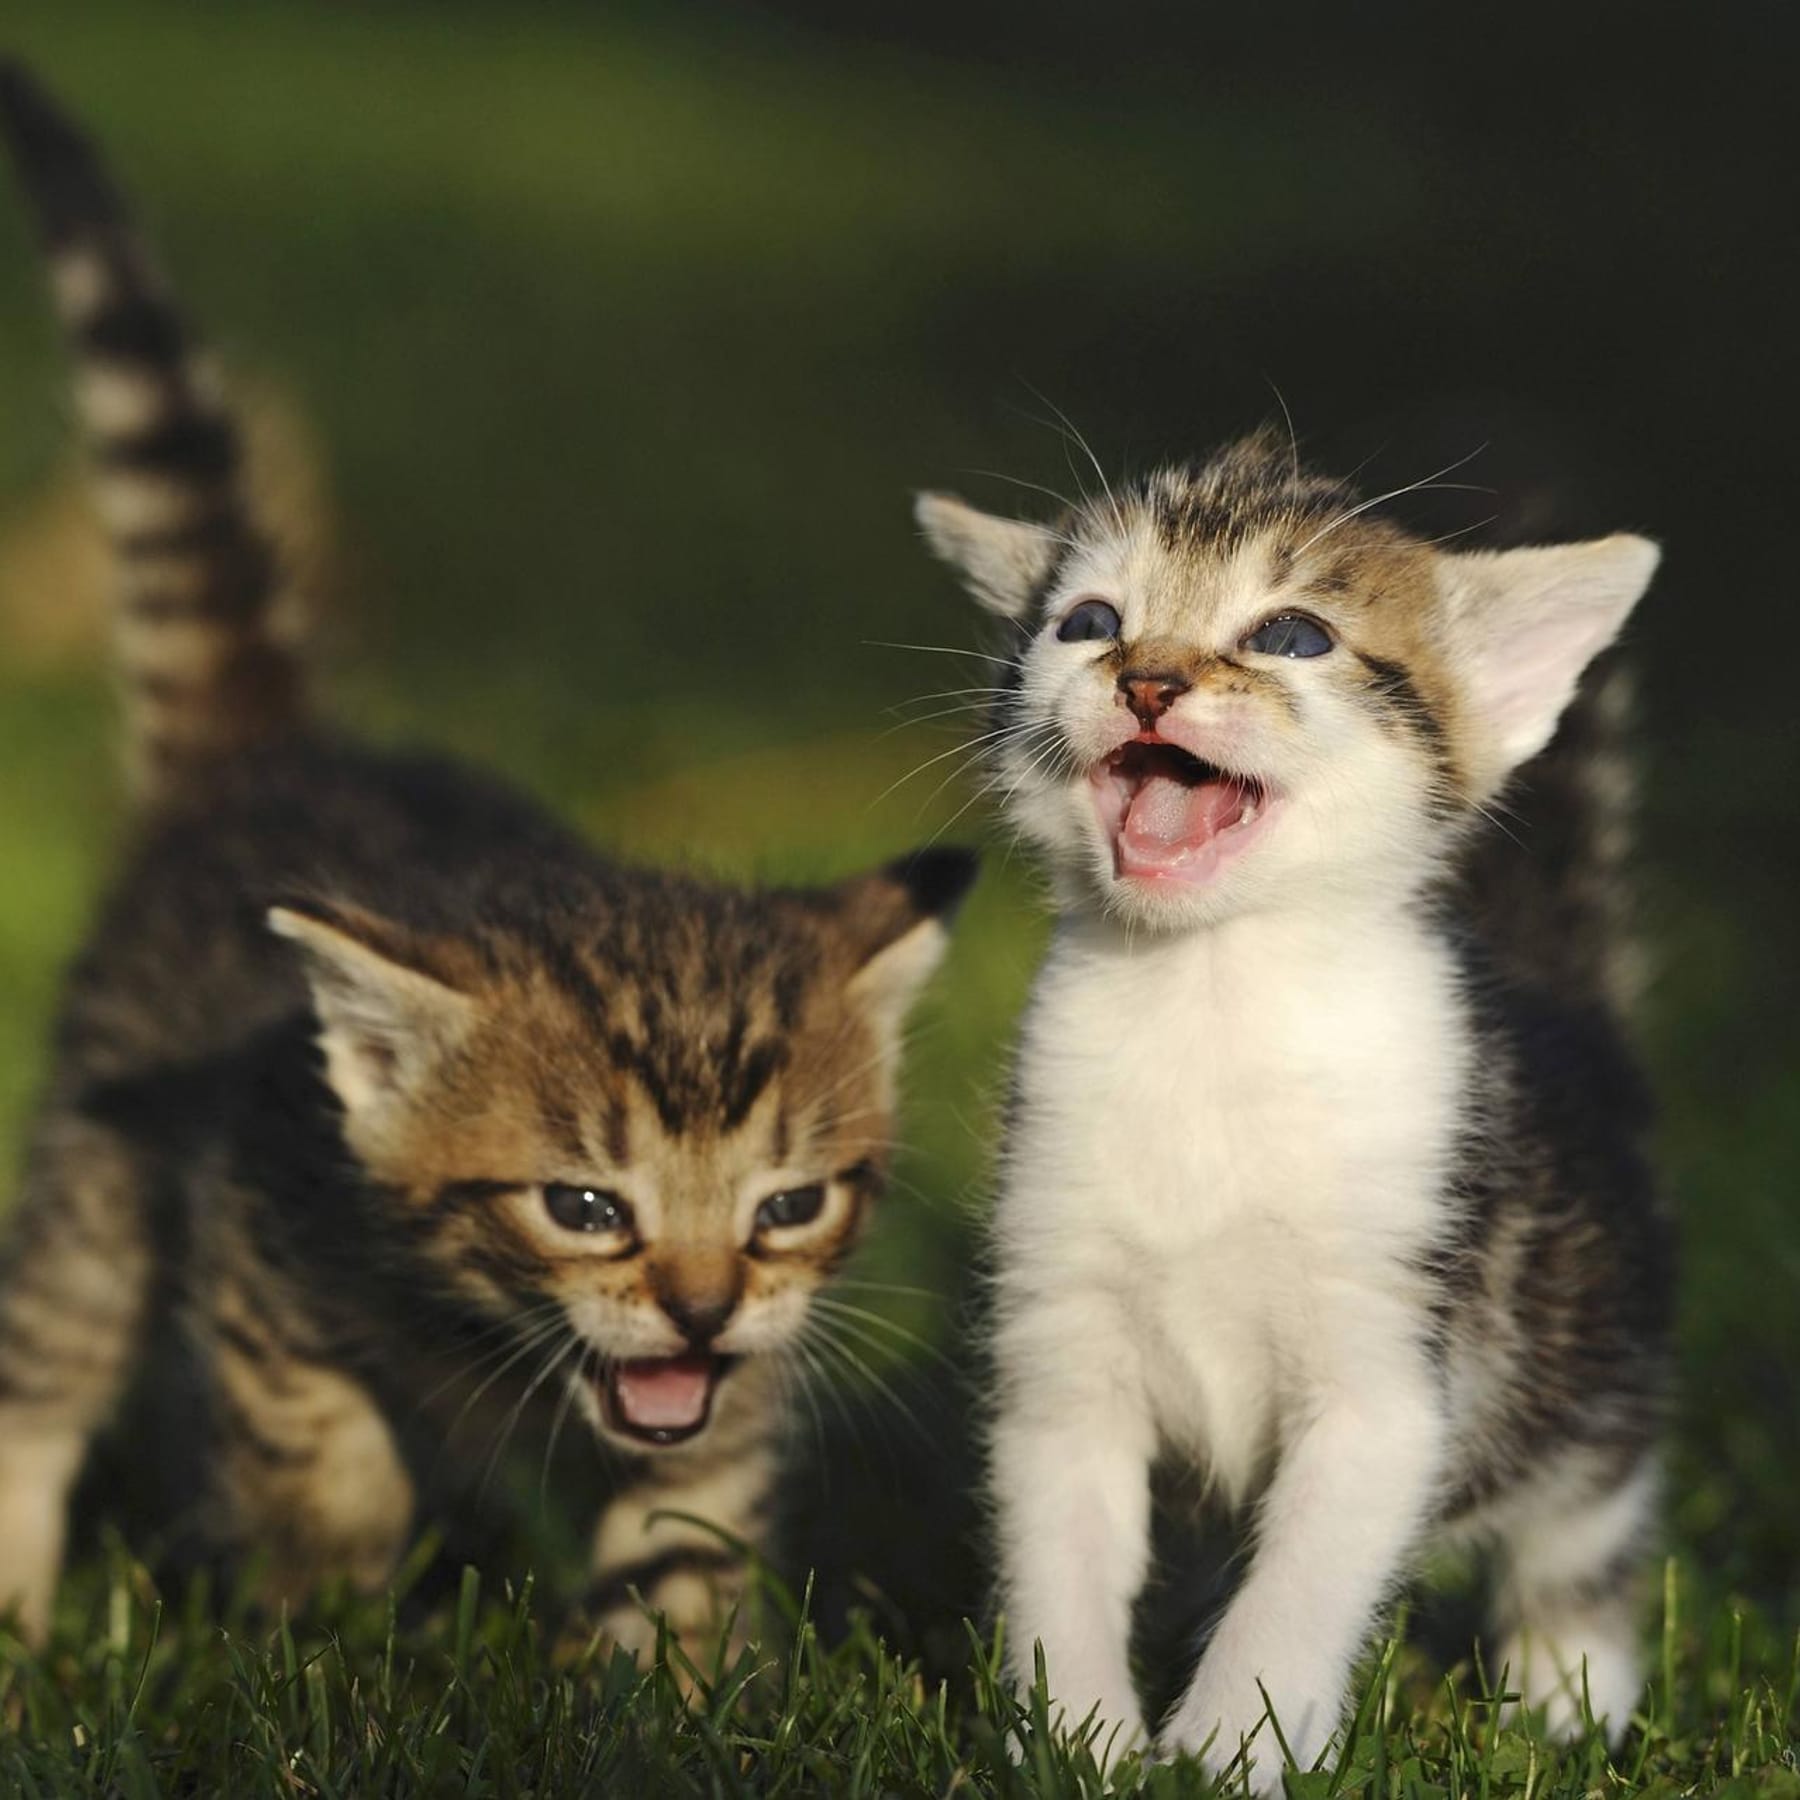 Katzen mit Geruch vertreiben: Diese Hausmittel sind effektiv